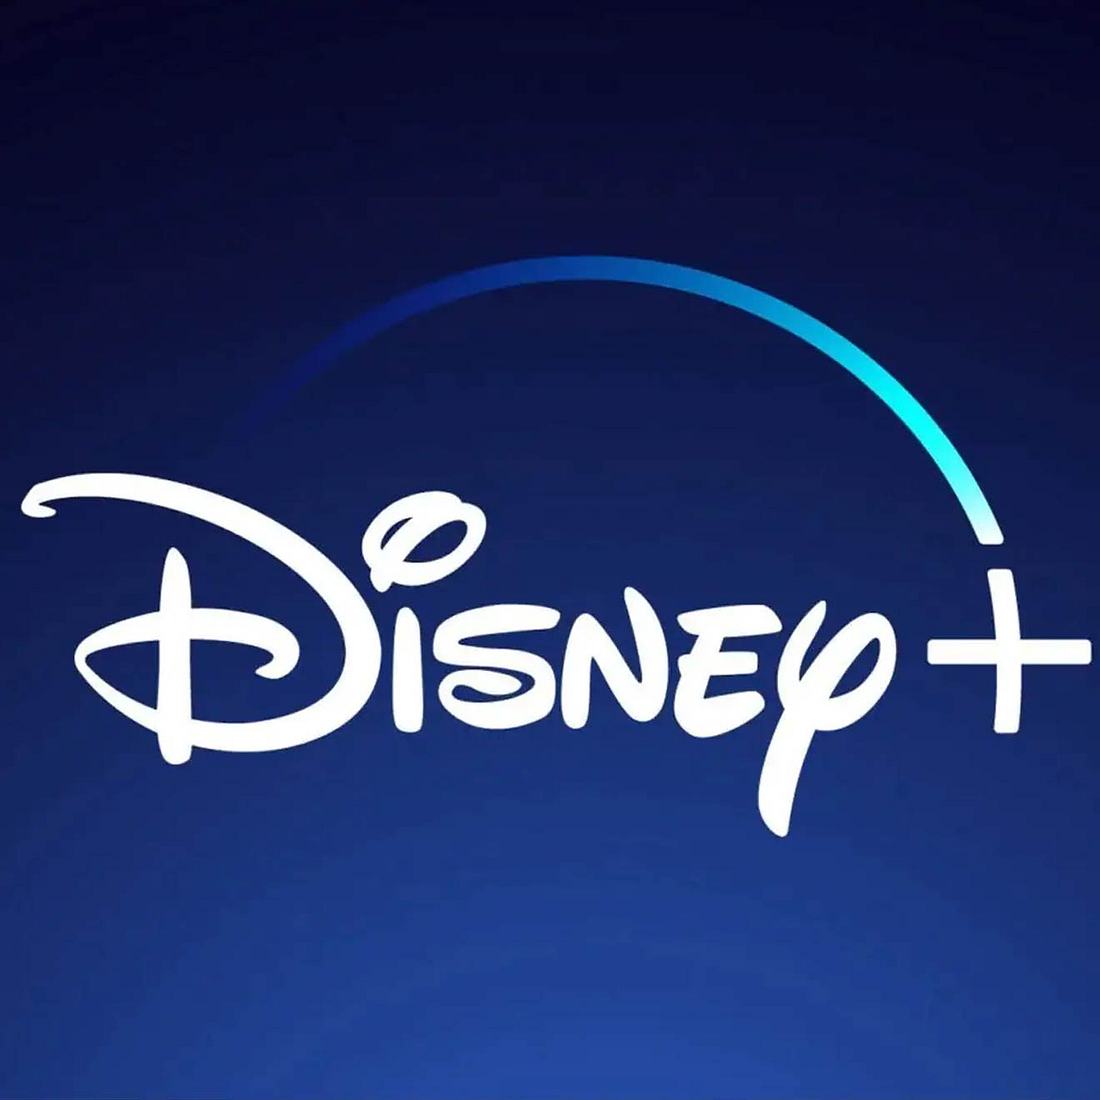 Disney Plus Programm Diese Filme und Serien erwarten dich